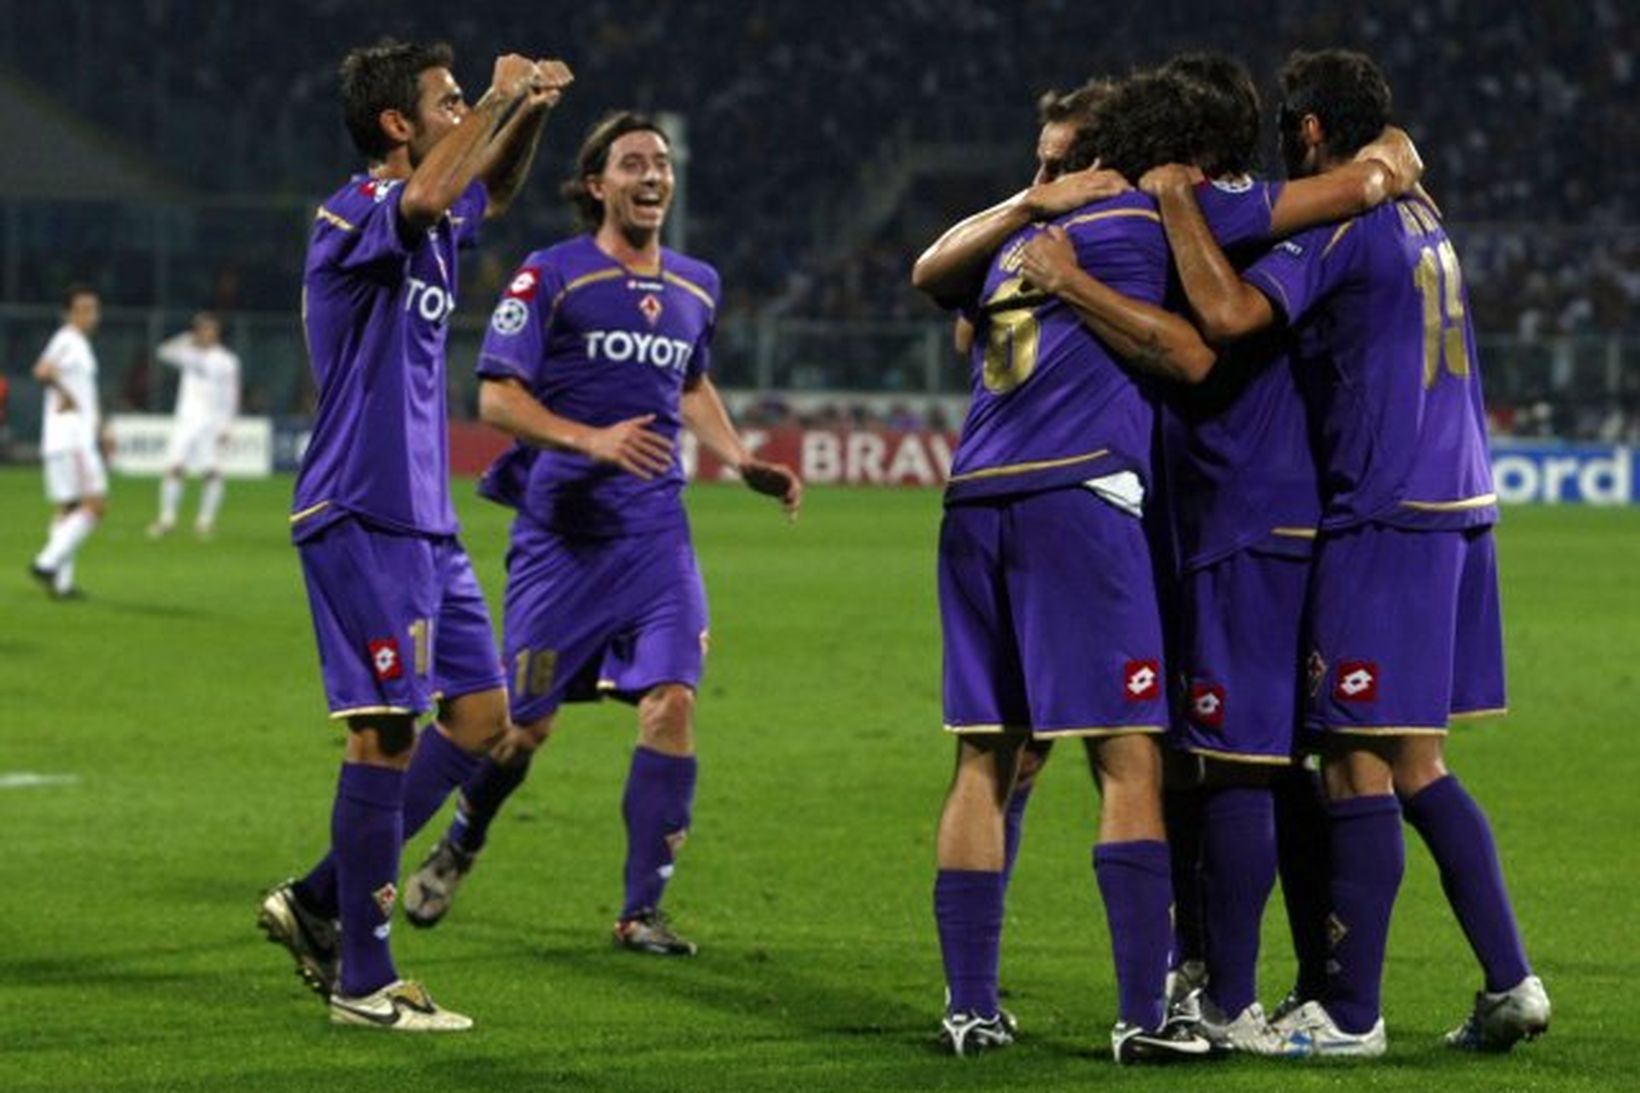 Leikmenn Fiorentina fagna öðru markinu sínu gegn Liverpool í kvöld.